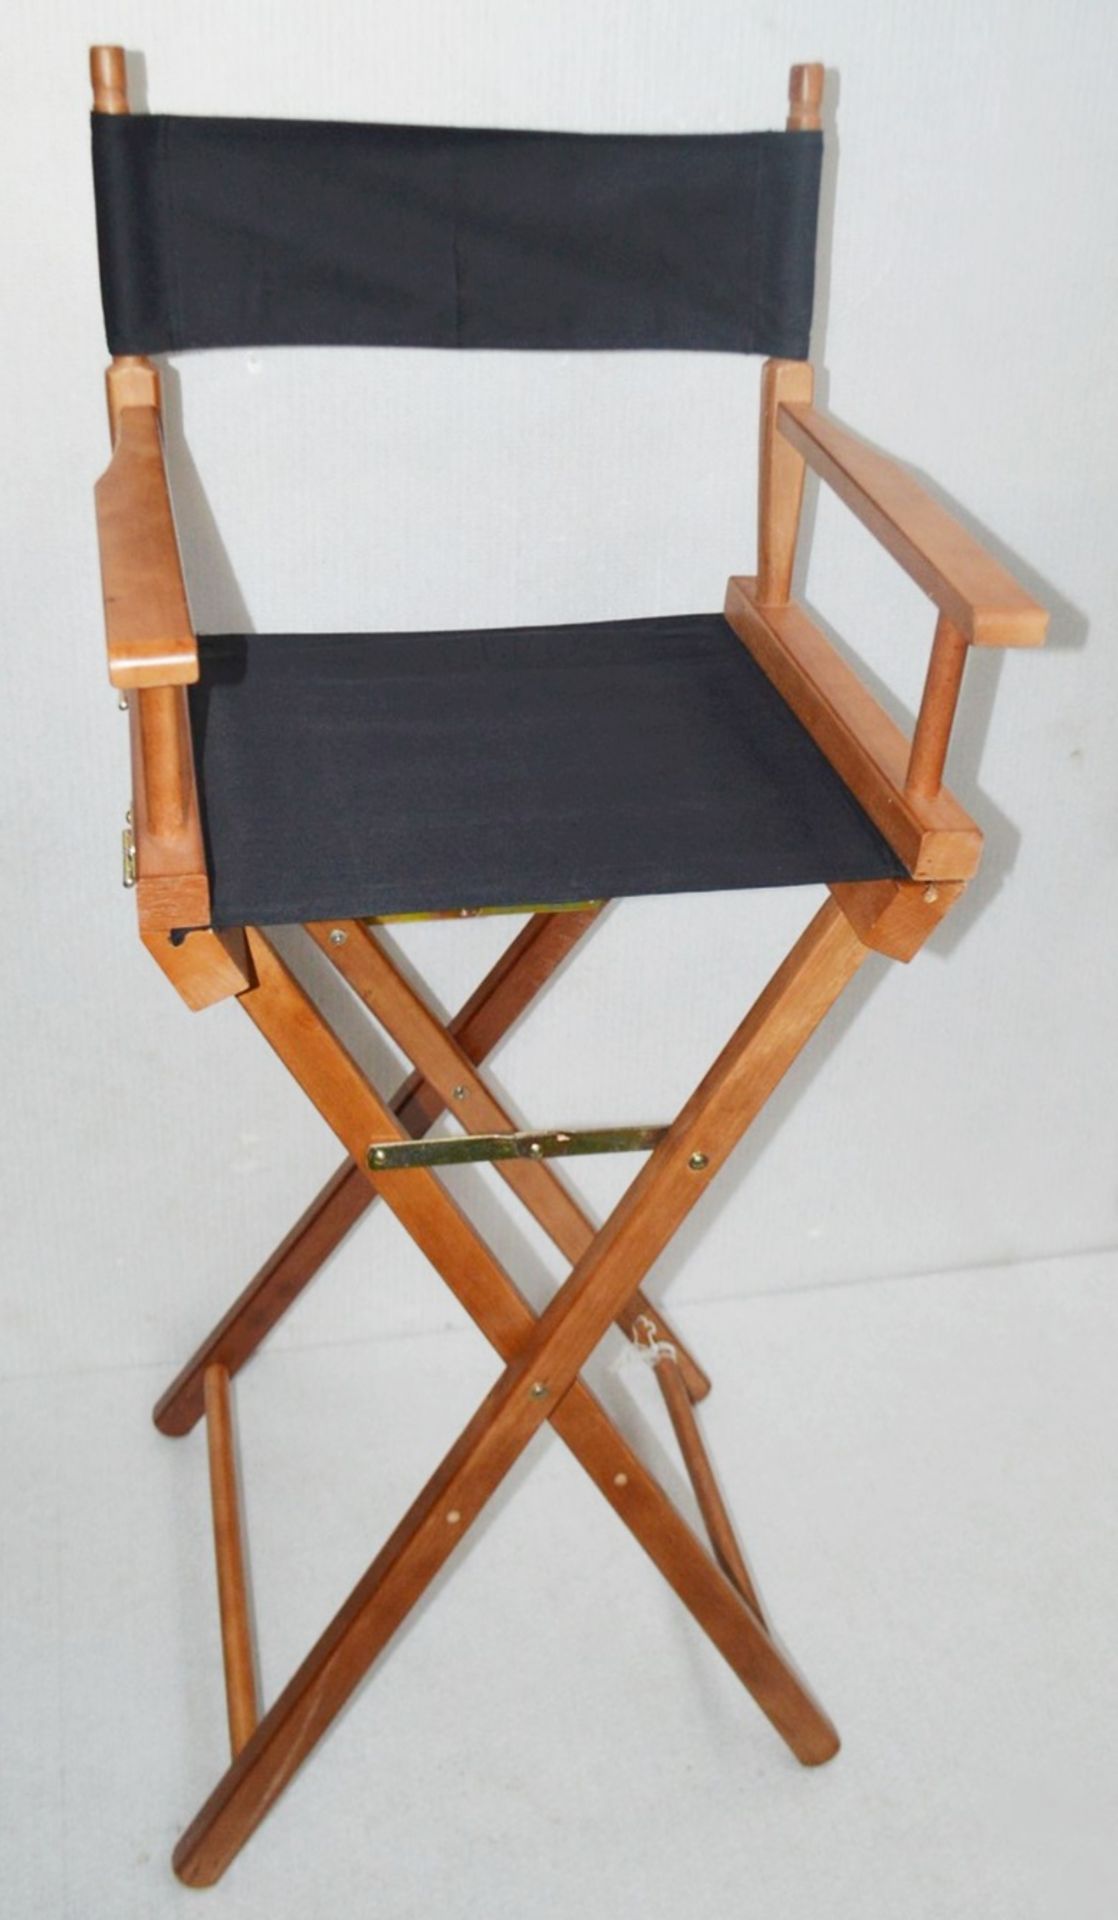 1 x Professional Tall Folding Directors Chair - Ex-Display - Dimensions (Approx): H120 x W52 x